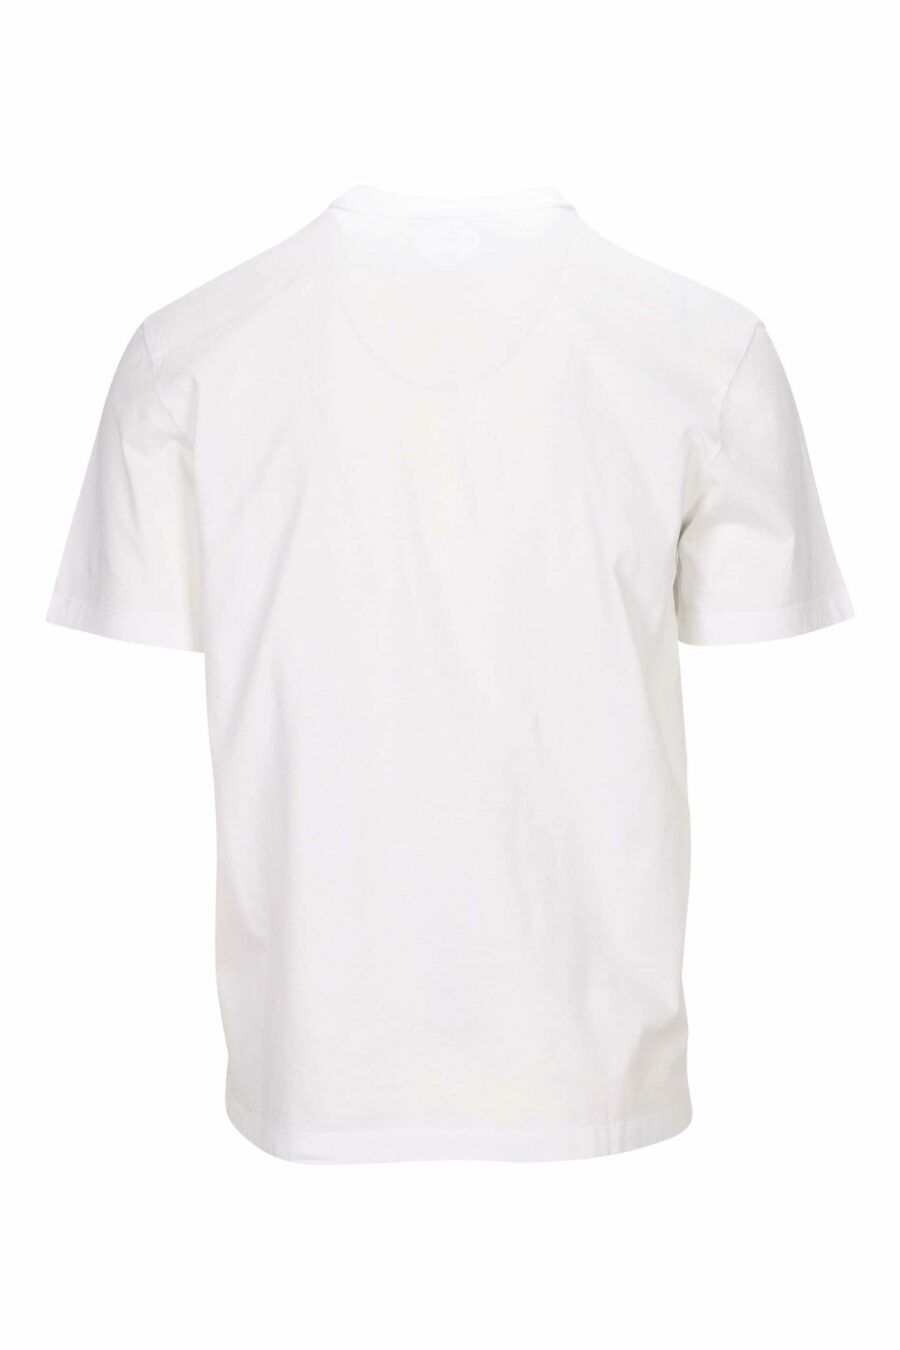 Weißes T-Shirt mit einfarbig geprägtem Maxilogo-Blatt - 8054148265830 1 skaliert